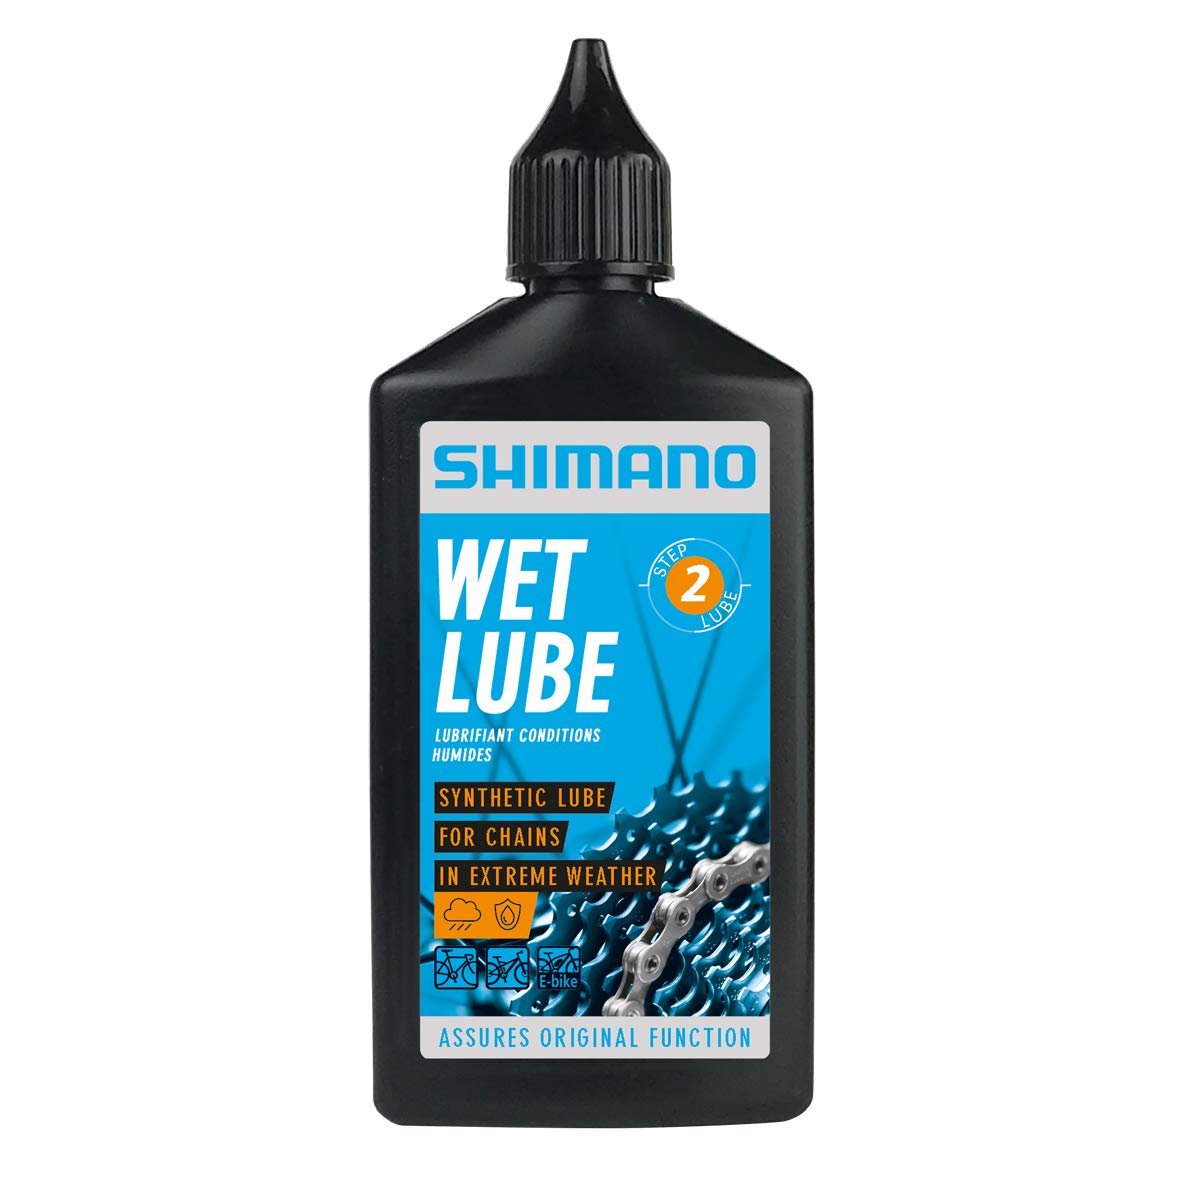 Смазка Shimano Wet Lube, для цепи, для влажной погоды, флакон, 100 мл, LBWL1B0100SA смазка grent wet lube для цепи для влажной погоды 120 мл 40471